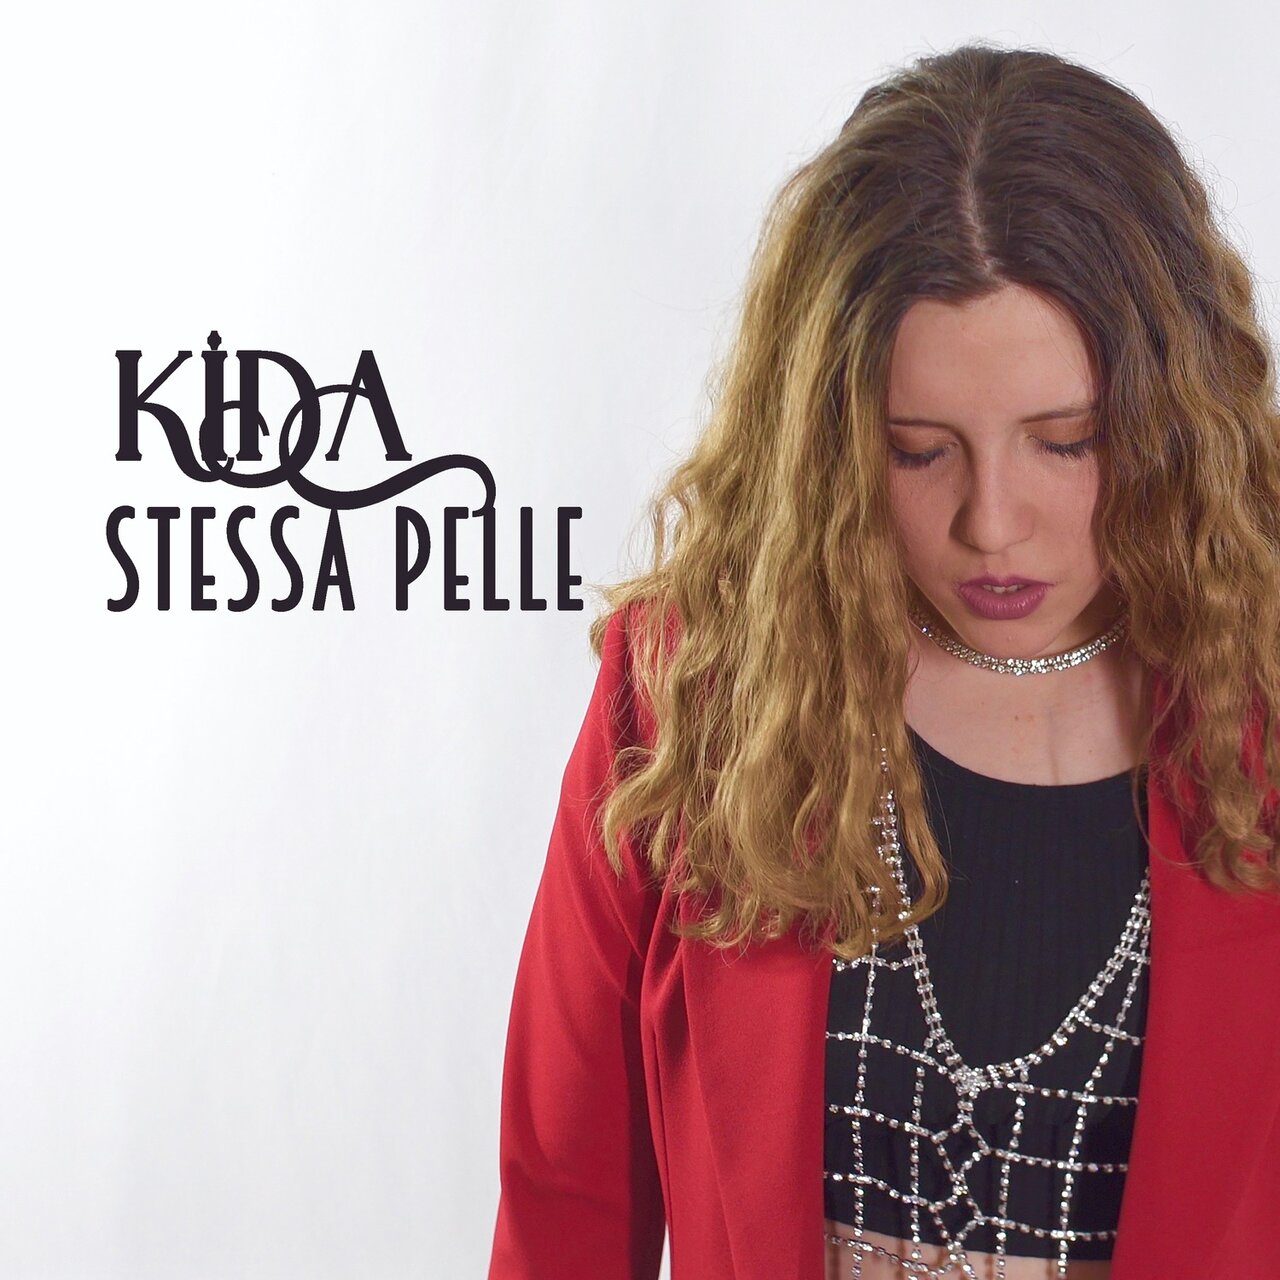 Kida — Stessa pelle cover artwork